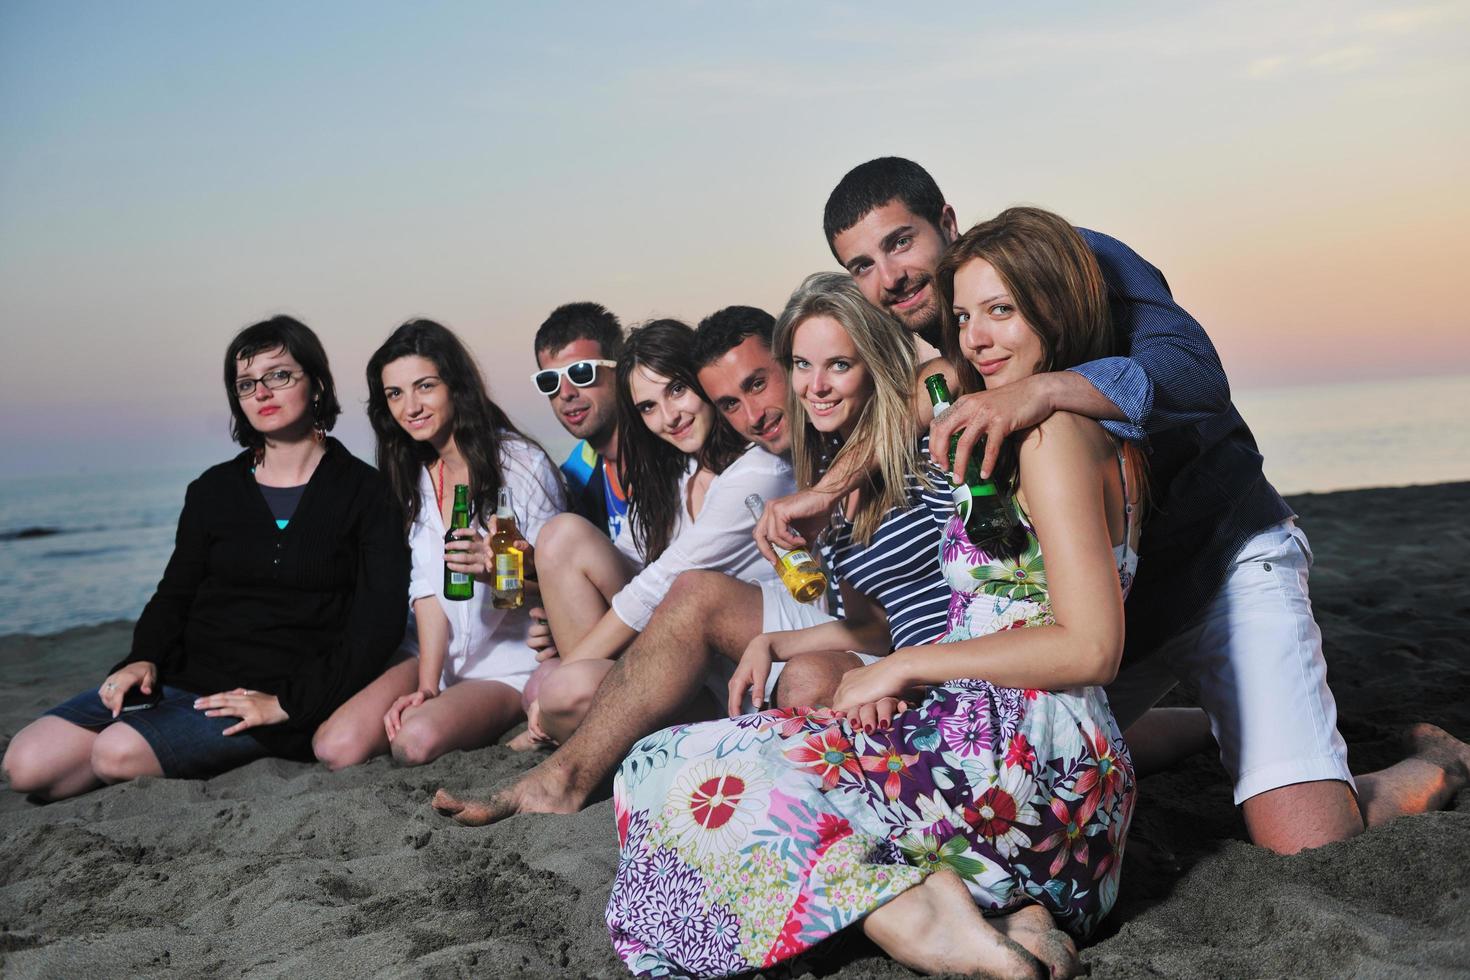 grupo de jóvenes disfrutan de la fiesta de verano en la playa foto